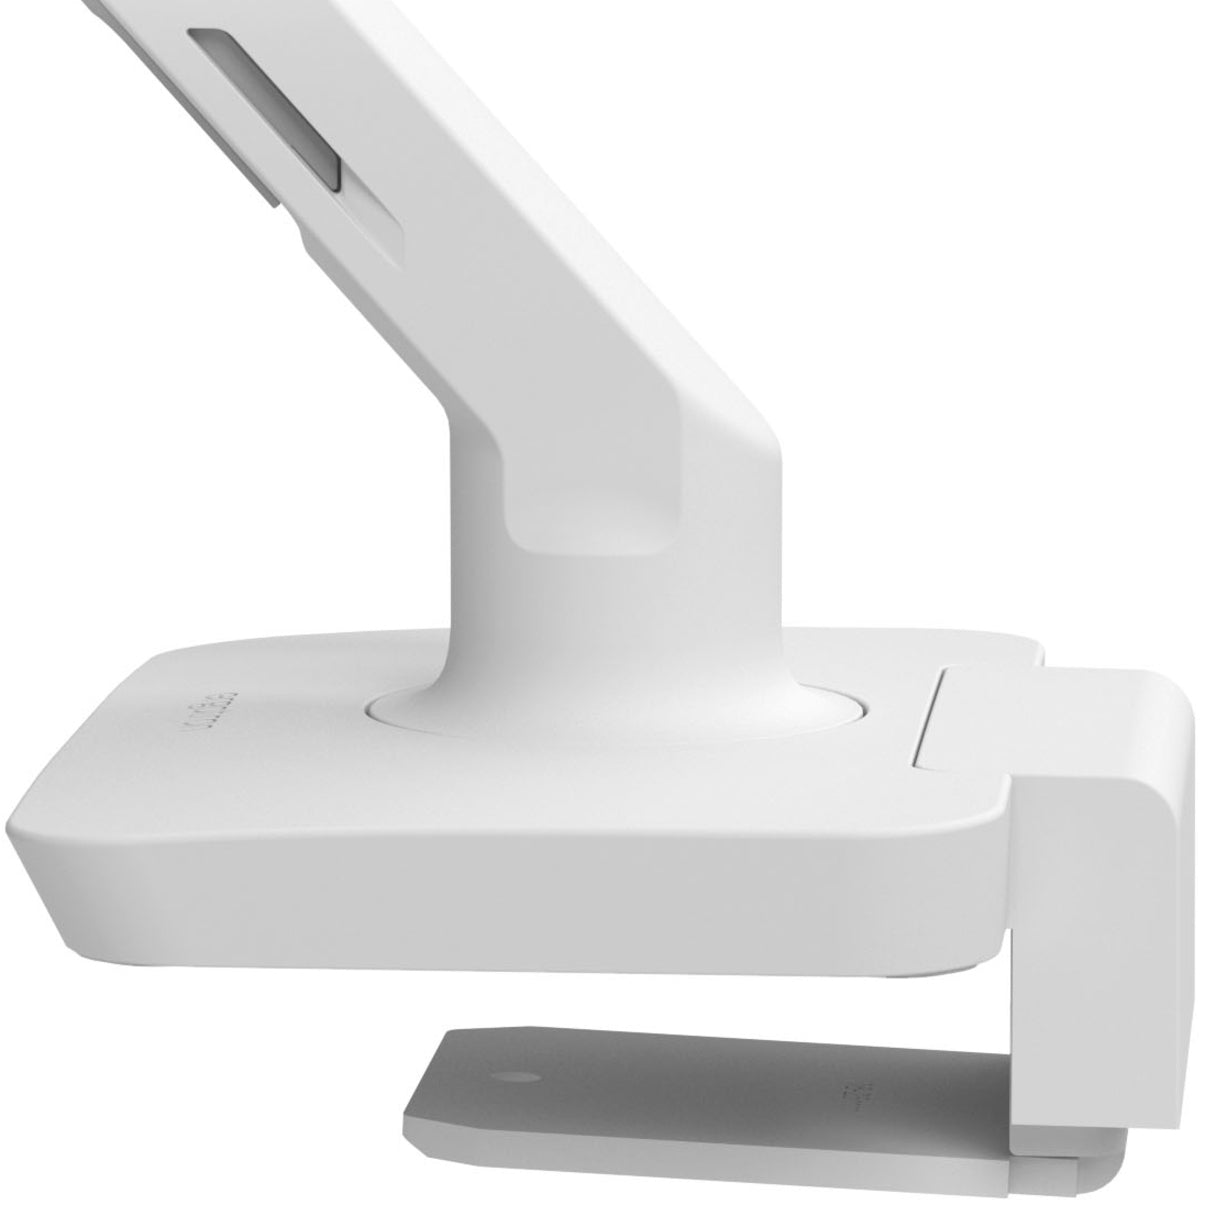 Ergotron 45-625-216 MXV Desk Mount for LCD Monitor, White - 360° Rotation, Tilt, Pan, Compact, Ergonomic